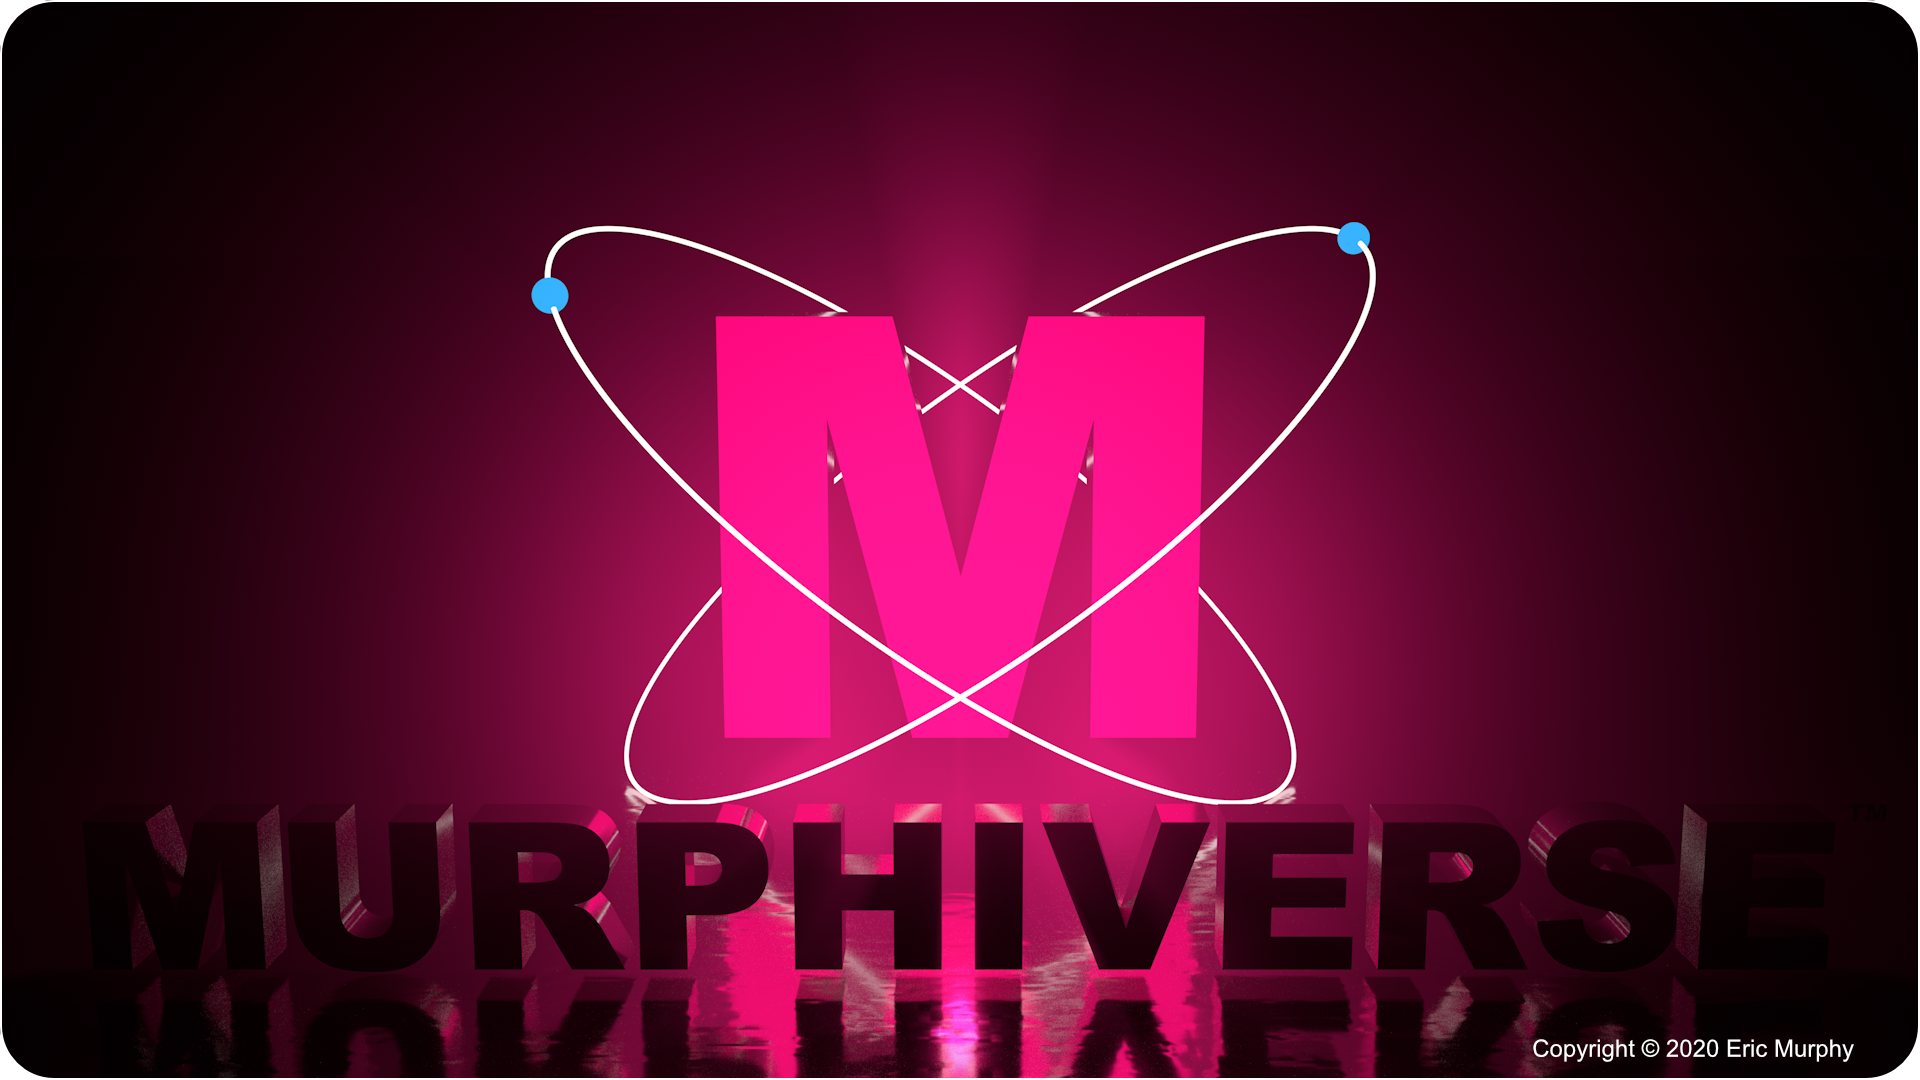 MURPHIVERSE.com Copyright 2020 Eric Murphy